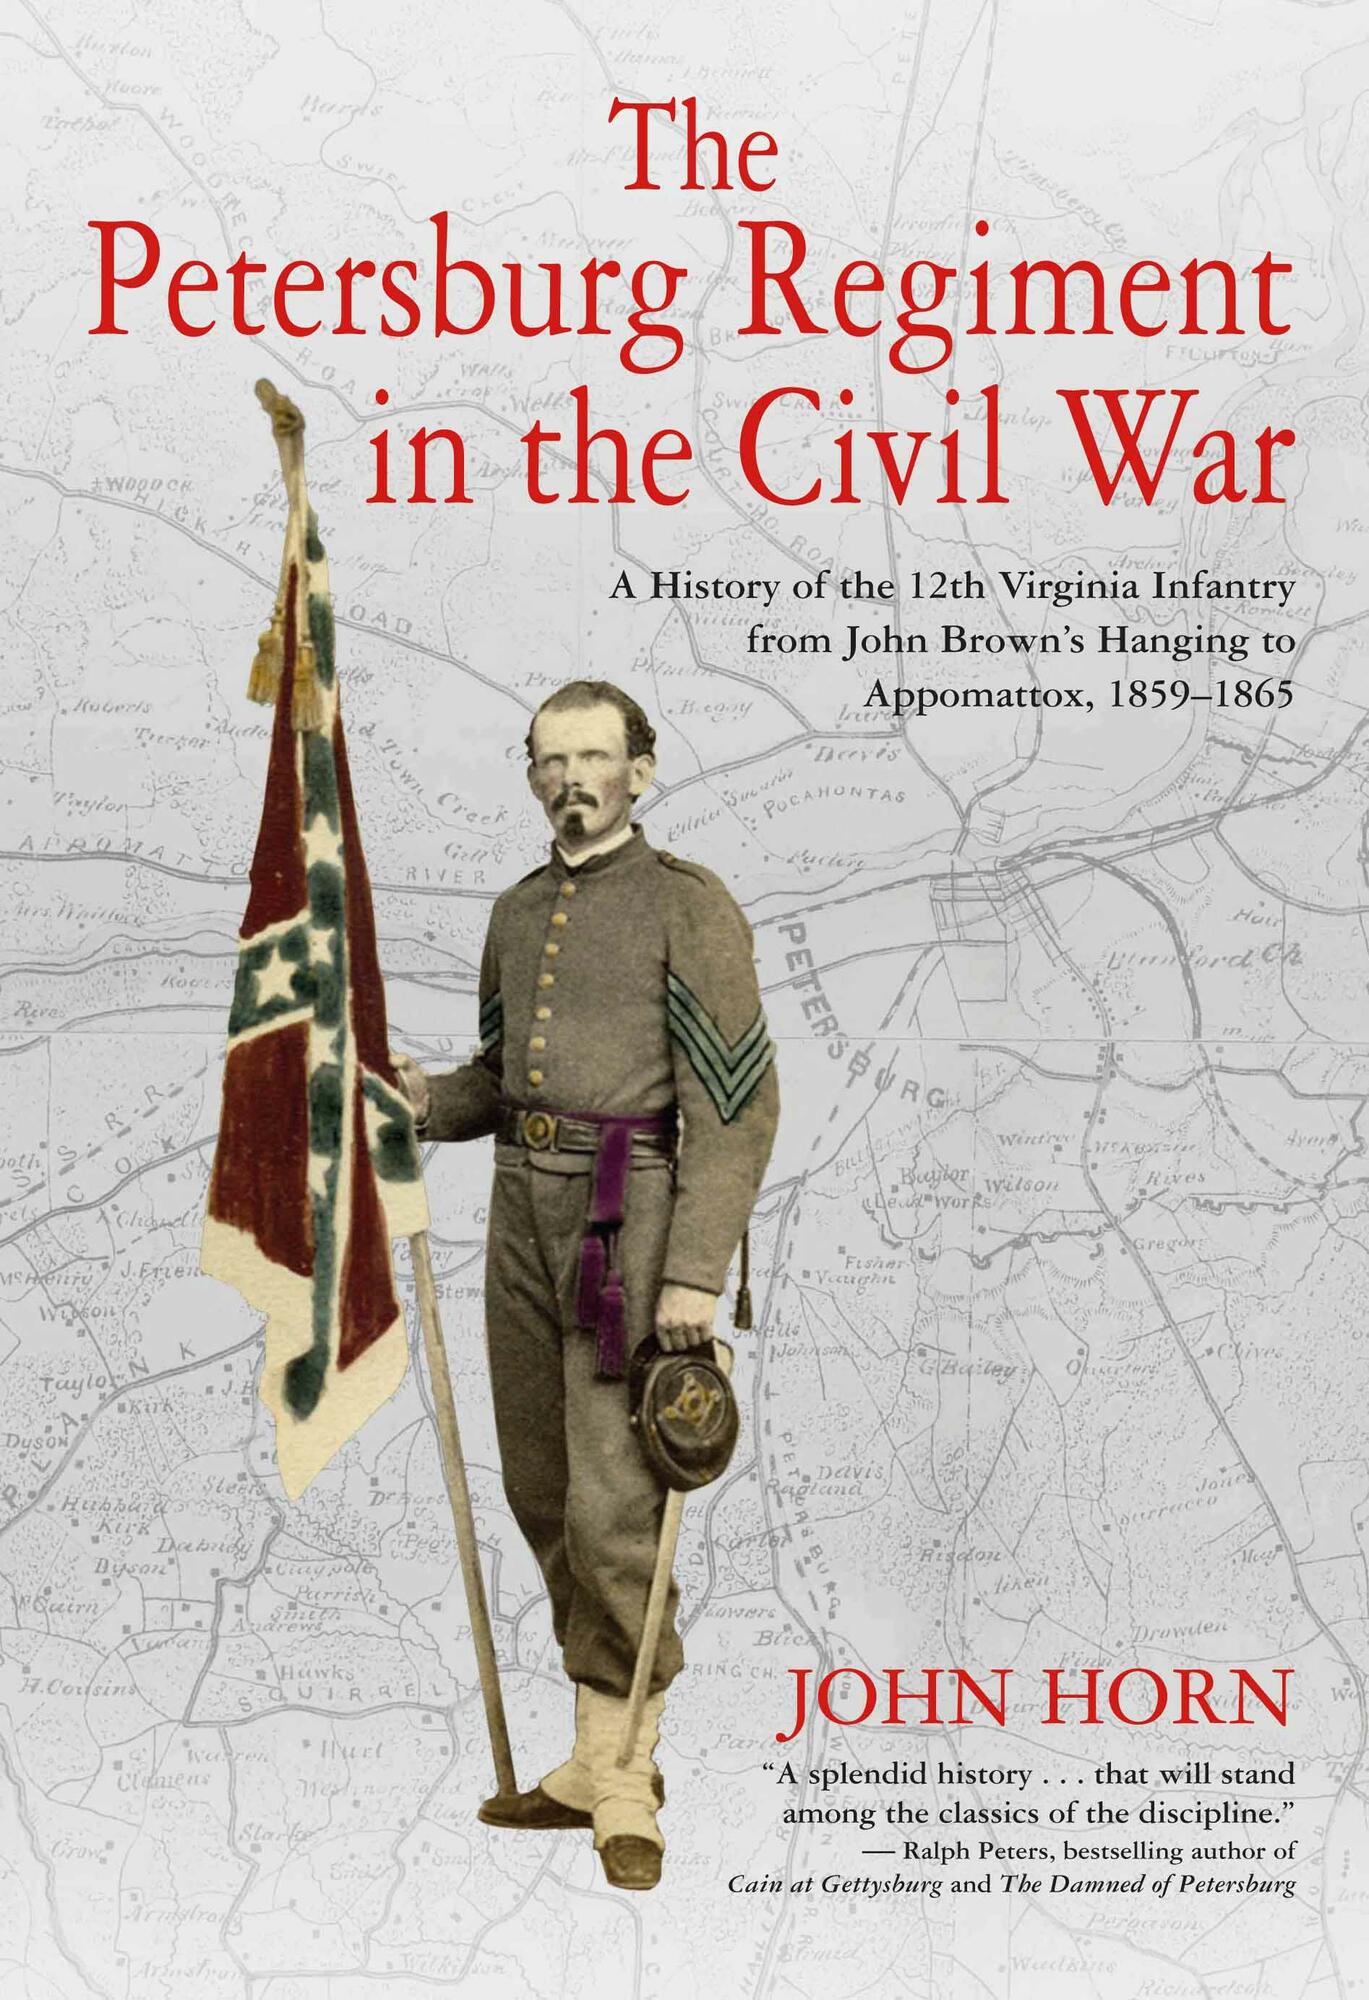 The Petersburg Regiment in the Civil War